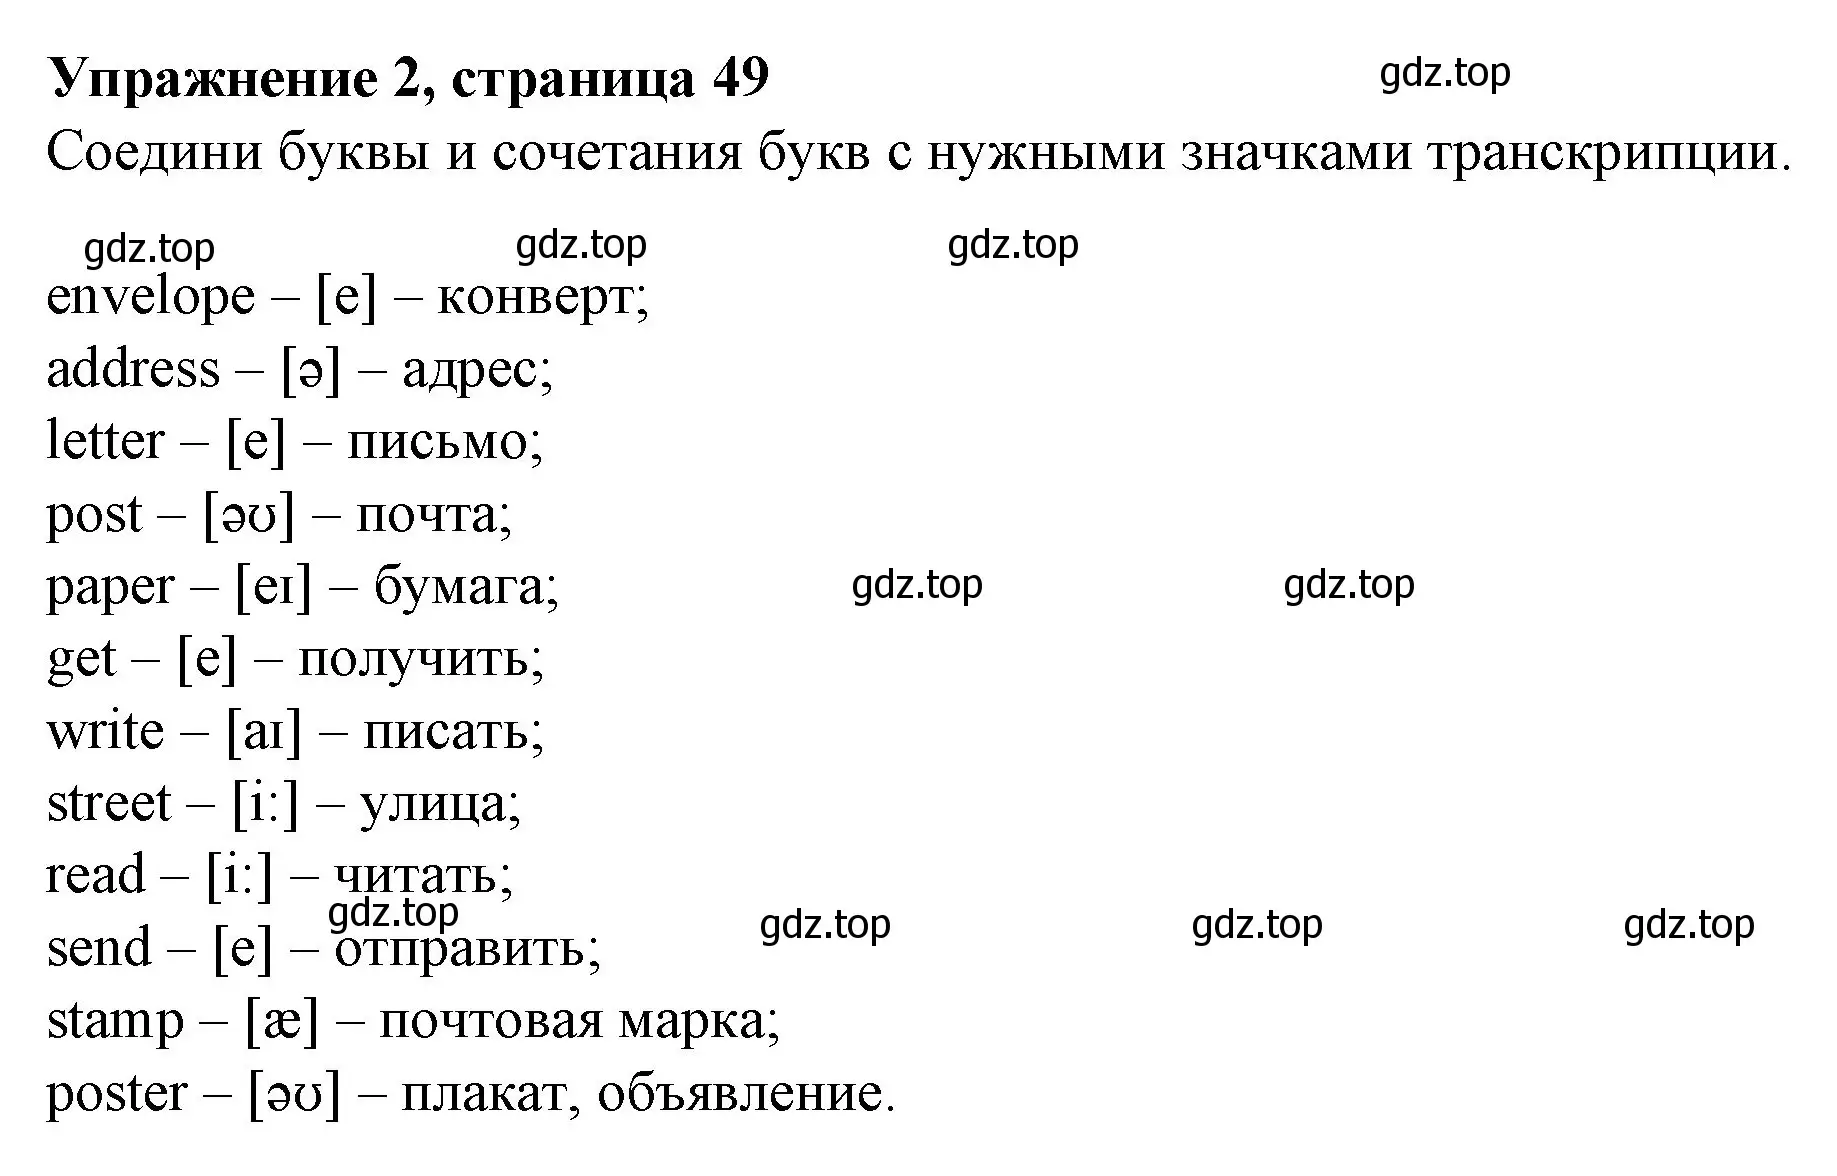 Решение номер 2 (страница 49) гдз по английскому языку 3 класс Биболетова, Денисенко, рабочая тетрадь